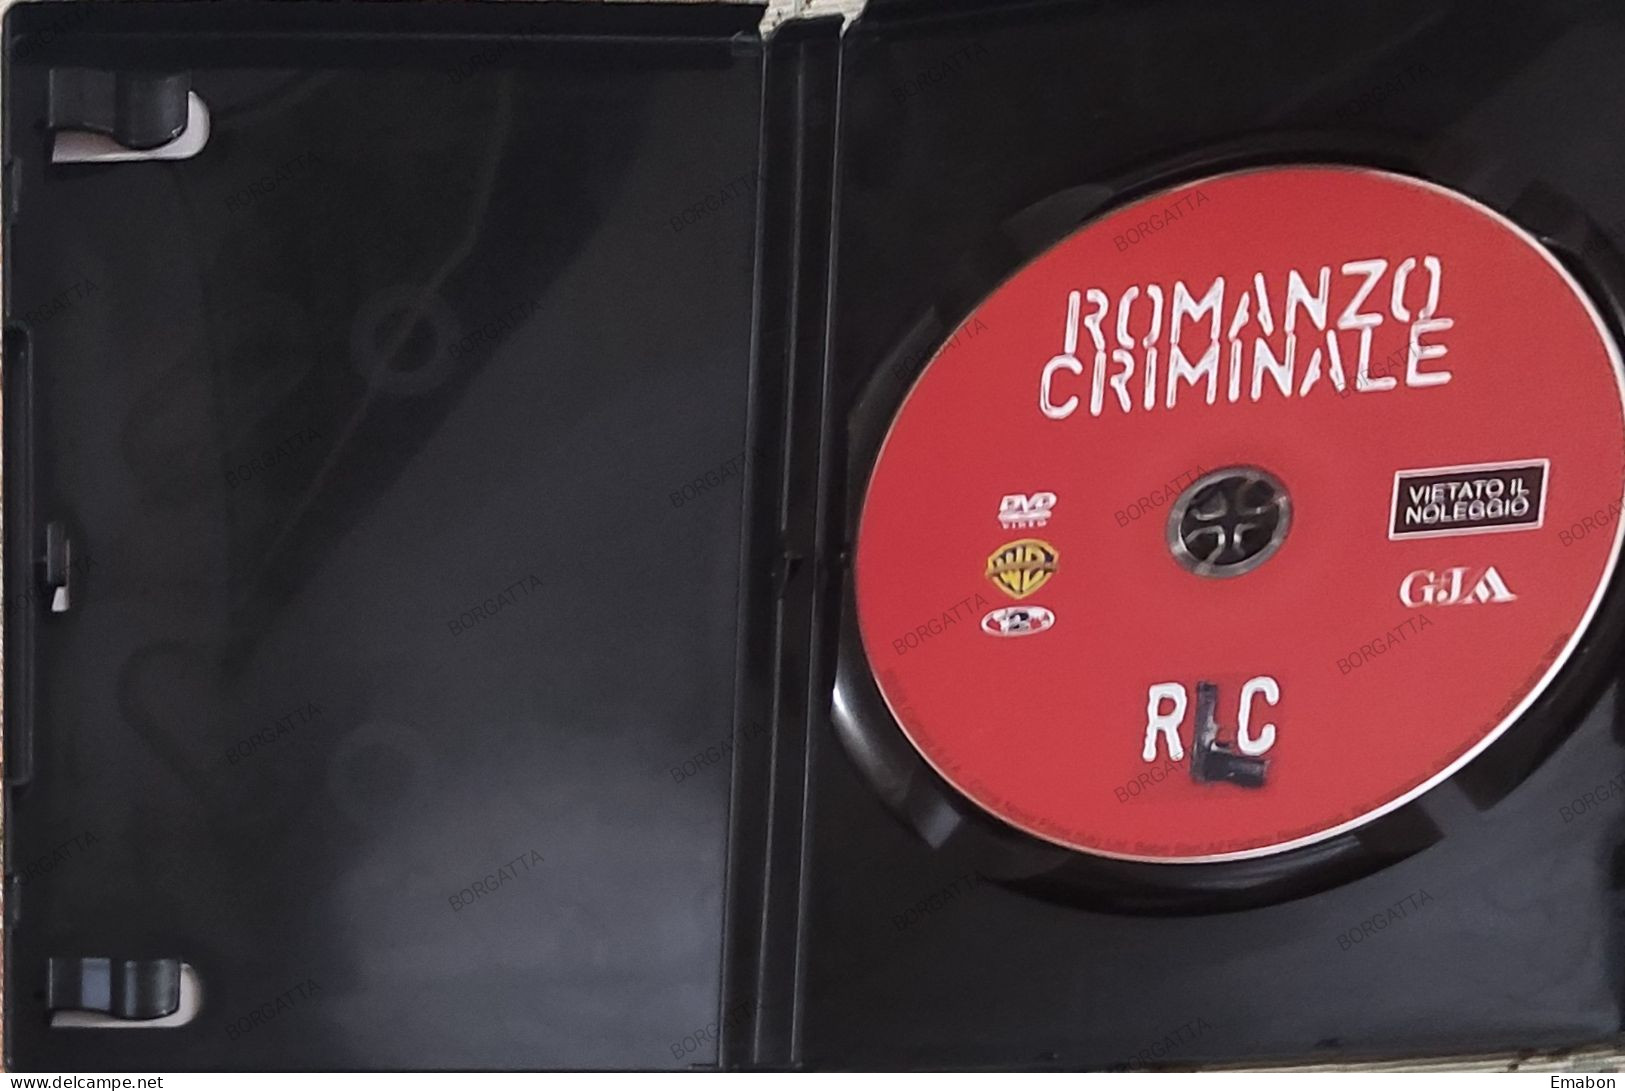 BORGATTA - DRAMMA - Dvd  " ROMANZO CRIMINALE " MICHELE PLACIDO - PAL 2 - WARNER 2008-  USATO In Buono Stato - Drame